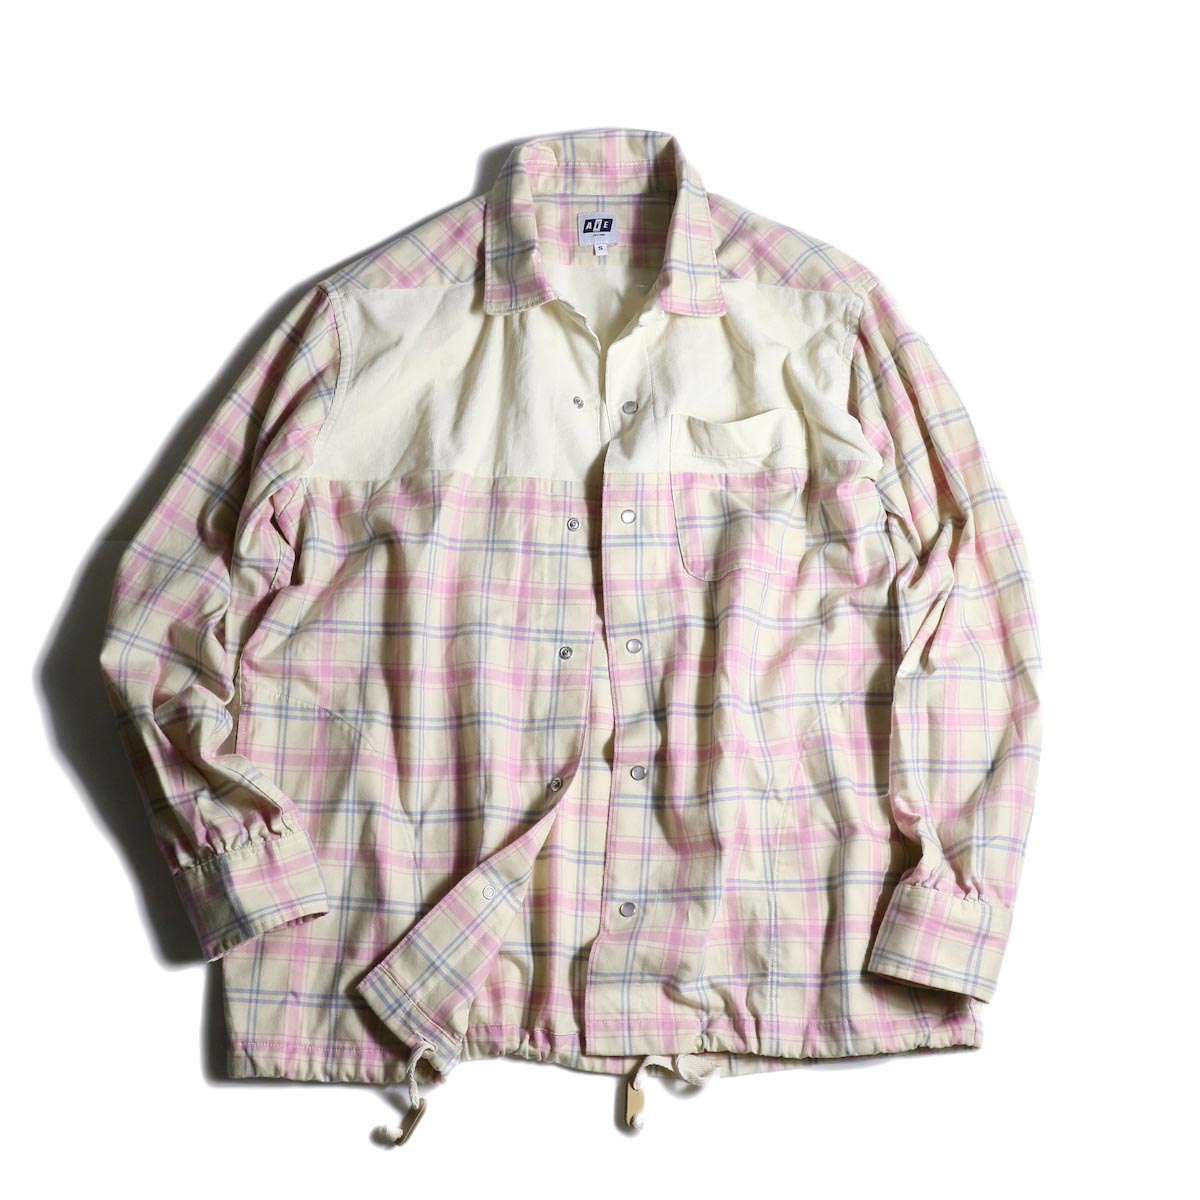 AiE / Coach Shirt -Cotton Plaid